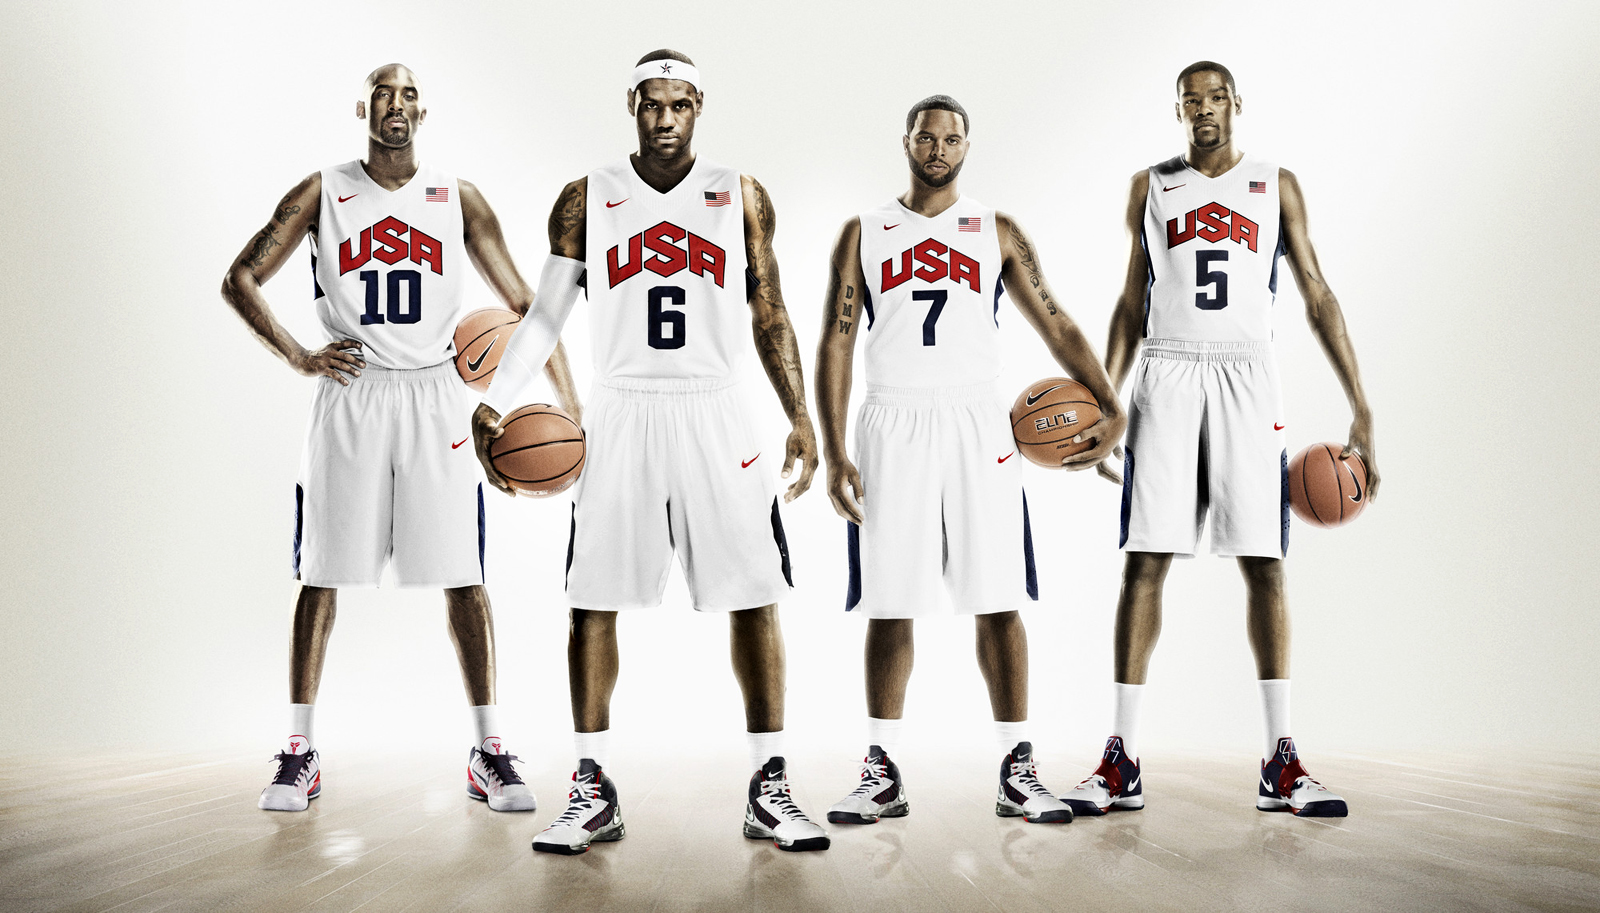 http://4.bp.blogspot.com/-FWkJK4VO3FM/T_wFcgUxgRI/AAAAAAAAClM/xftNAlE9q-w/s1600/Usa_Basketball_Team_Olympics_2012_Nike_HD_Wallpaper-Vvallpaper.Net.jpg